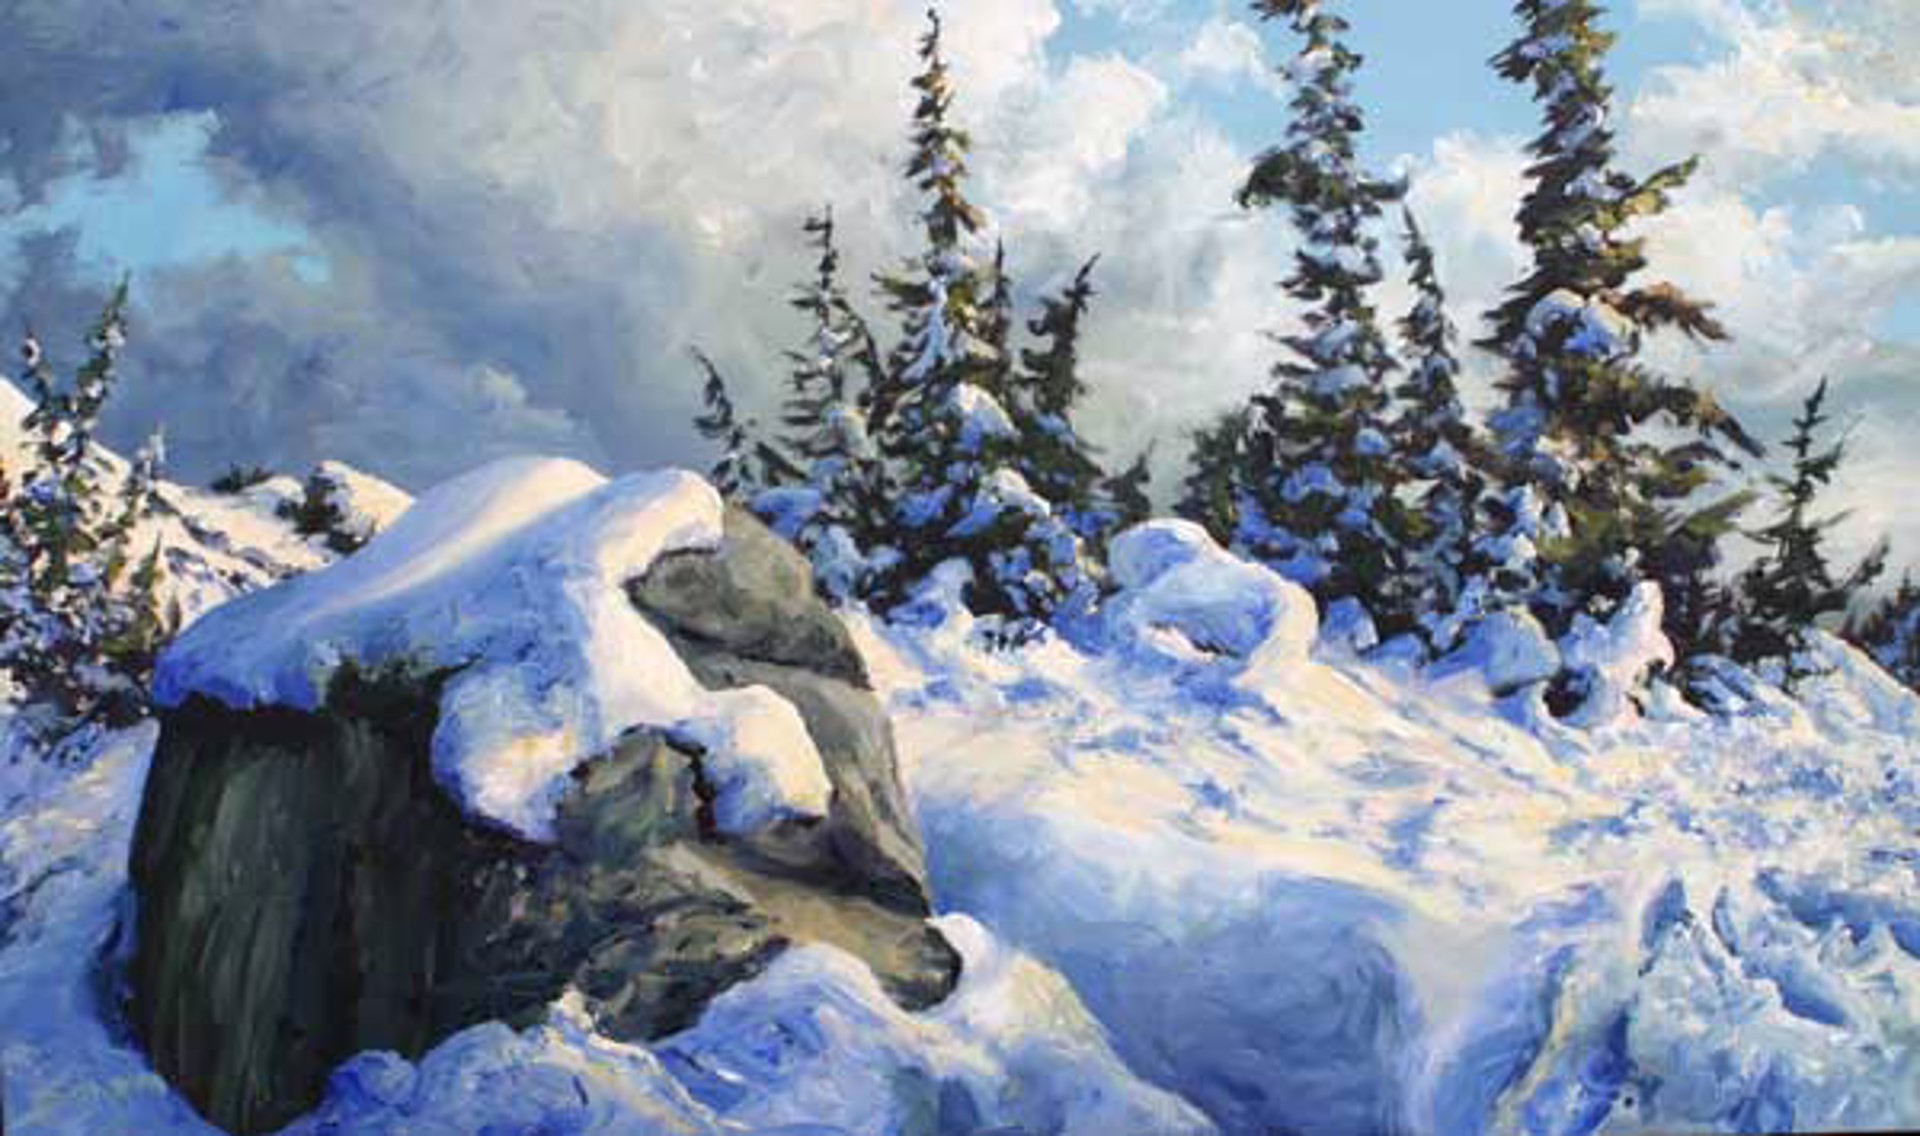 First Snow by Tim Schumm